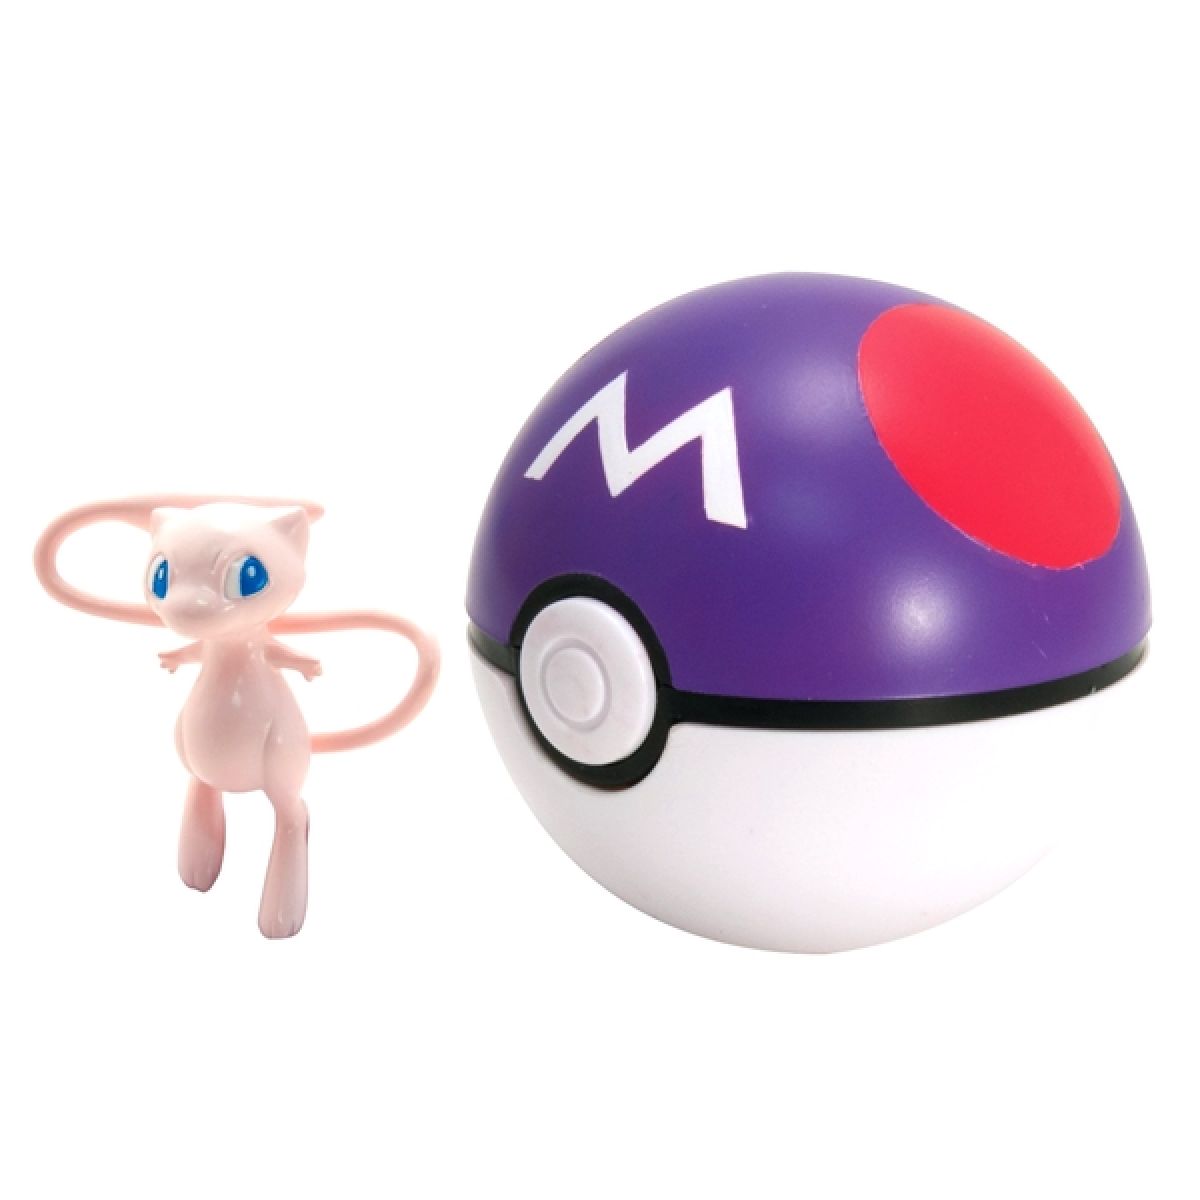 Pokémon Pokéball s figurkou - Mew